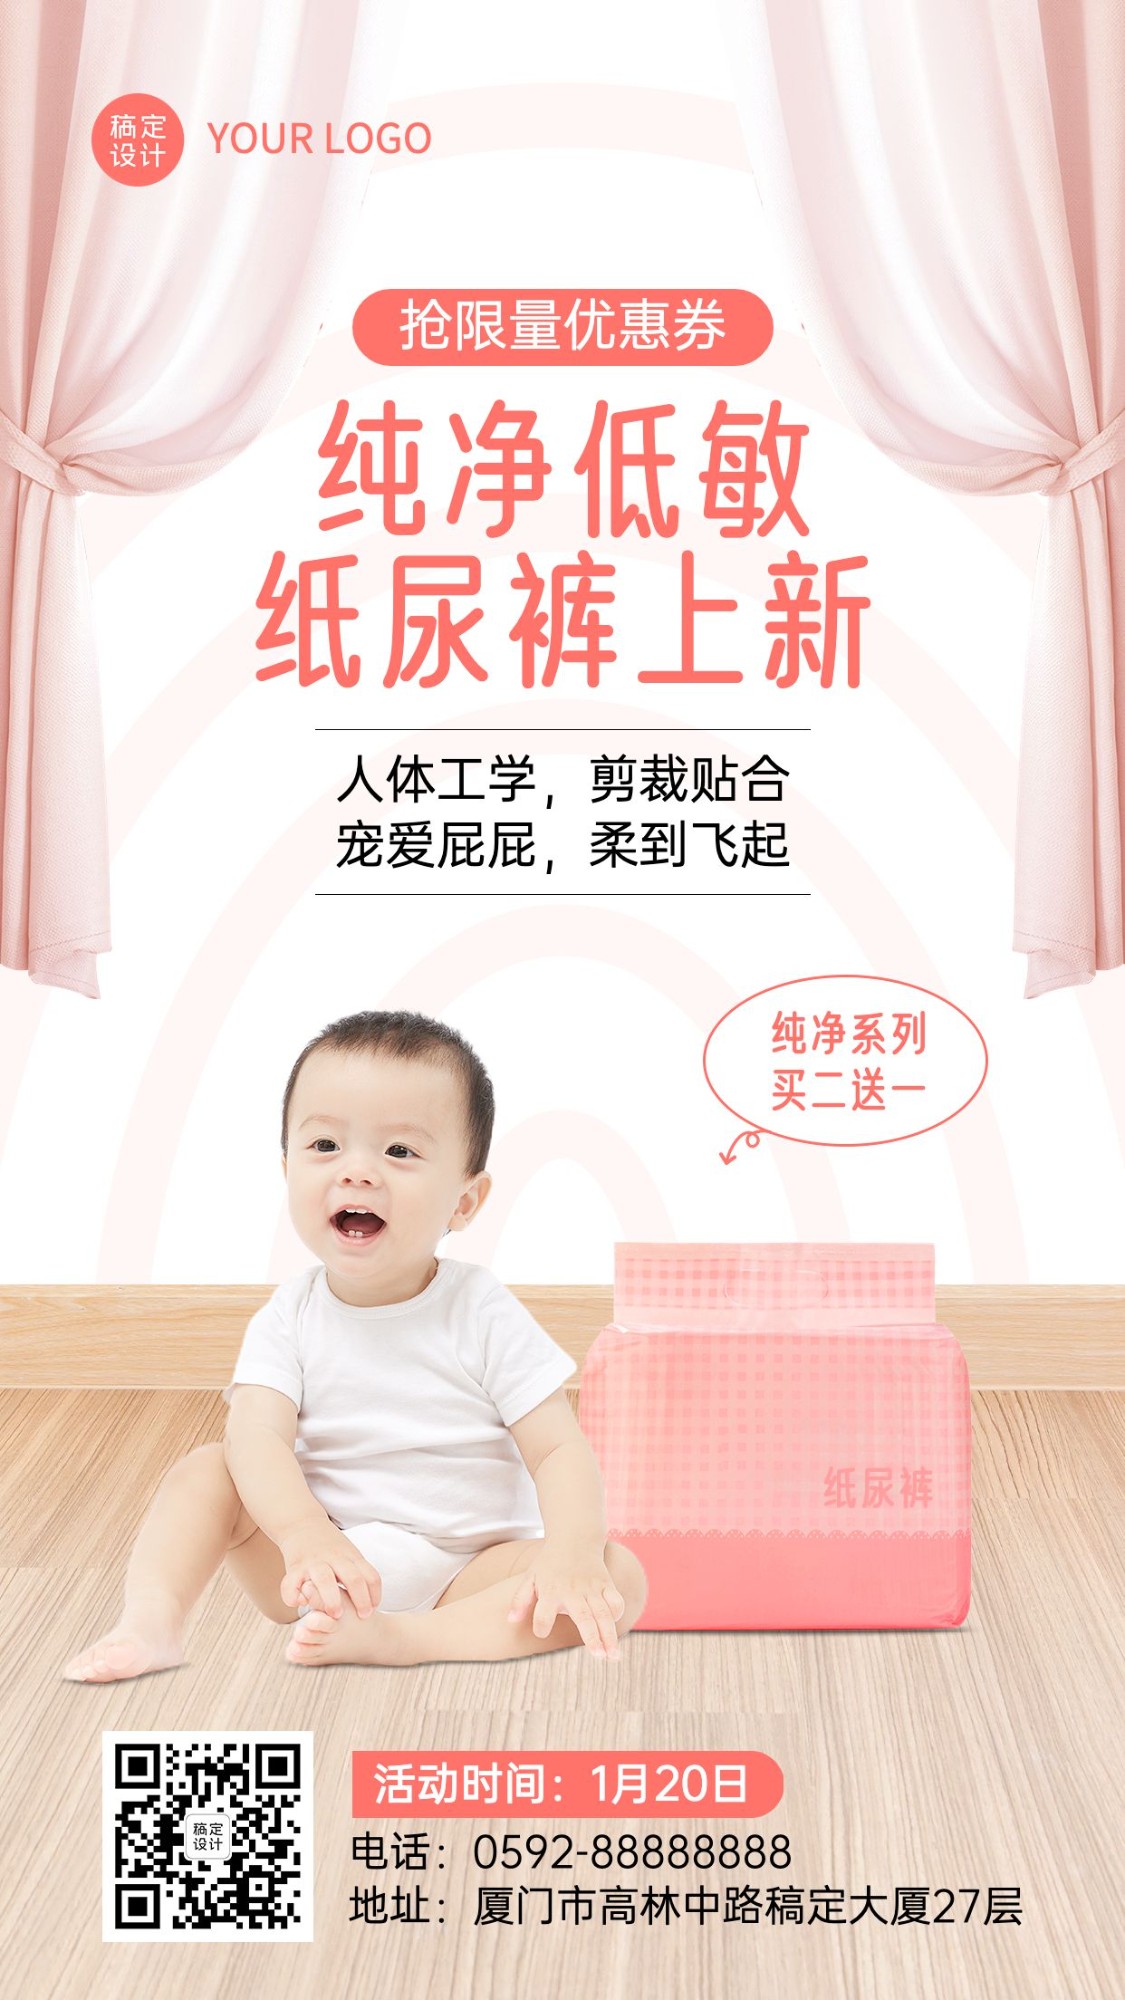 母婴亲子产品营销展示可爱实景风手机海报预览效果